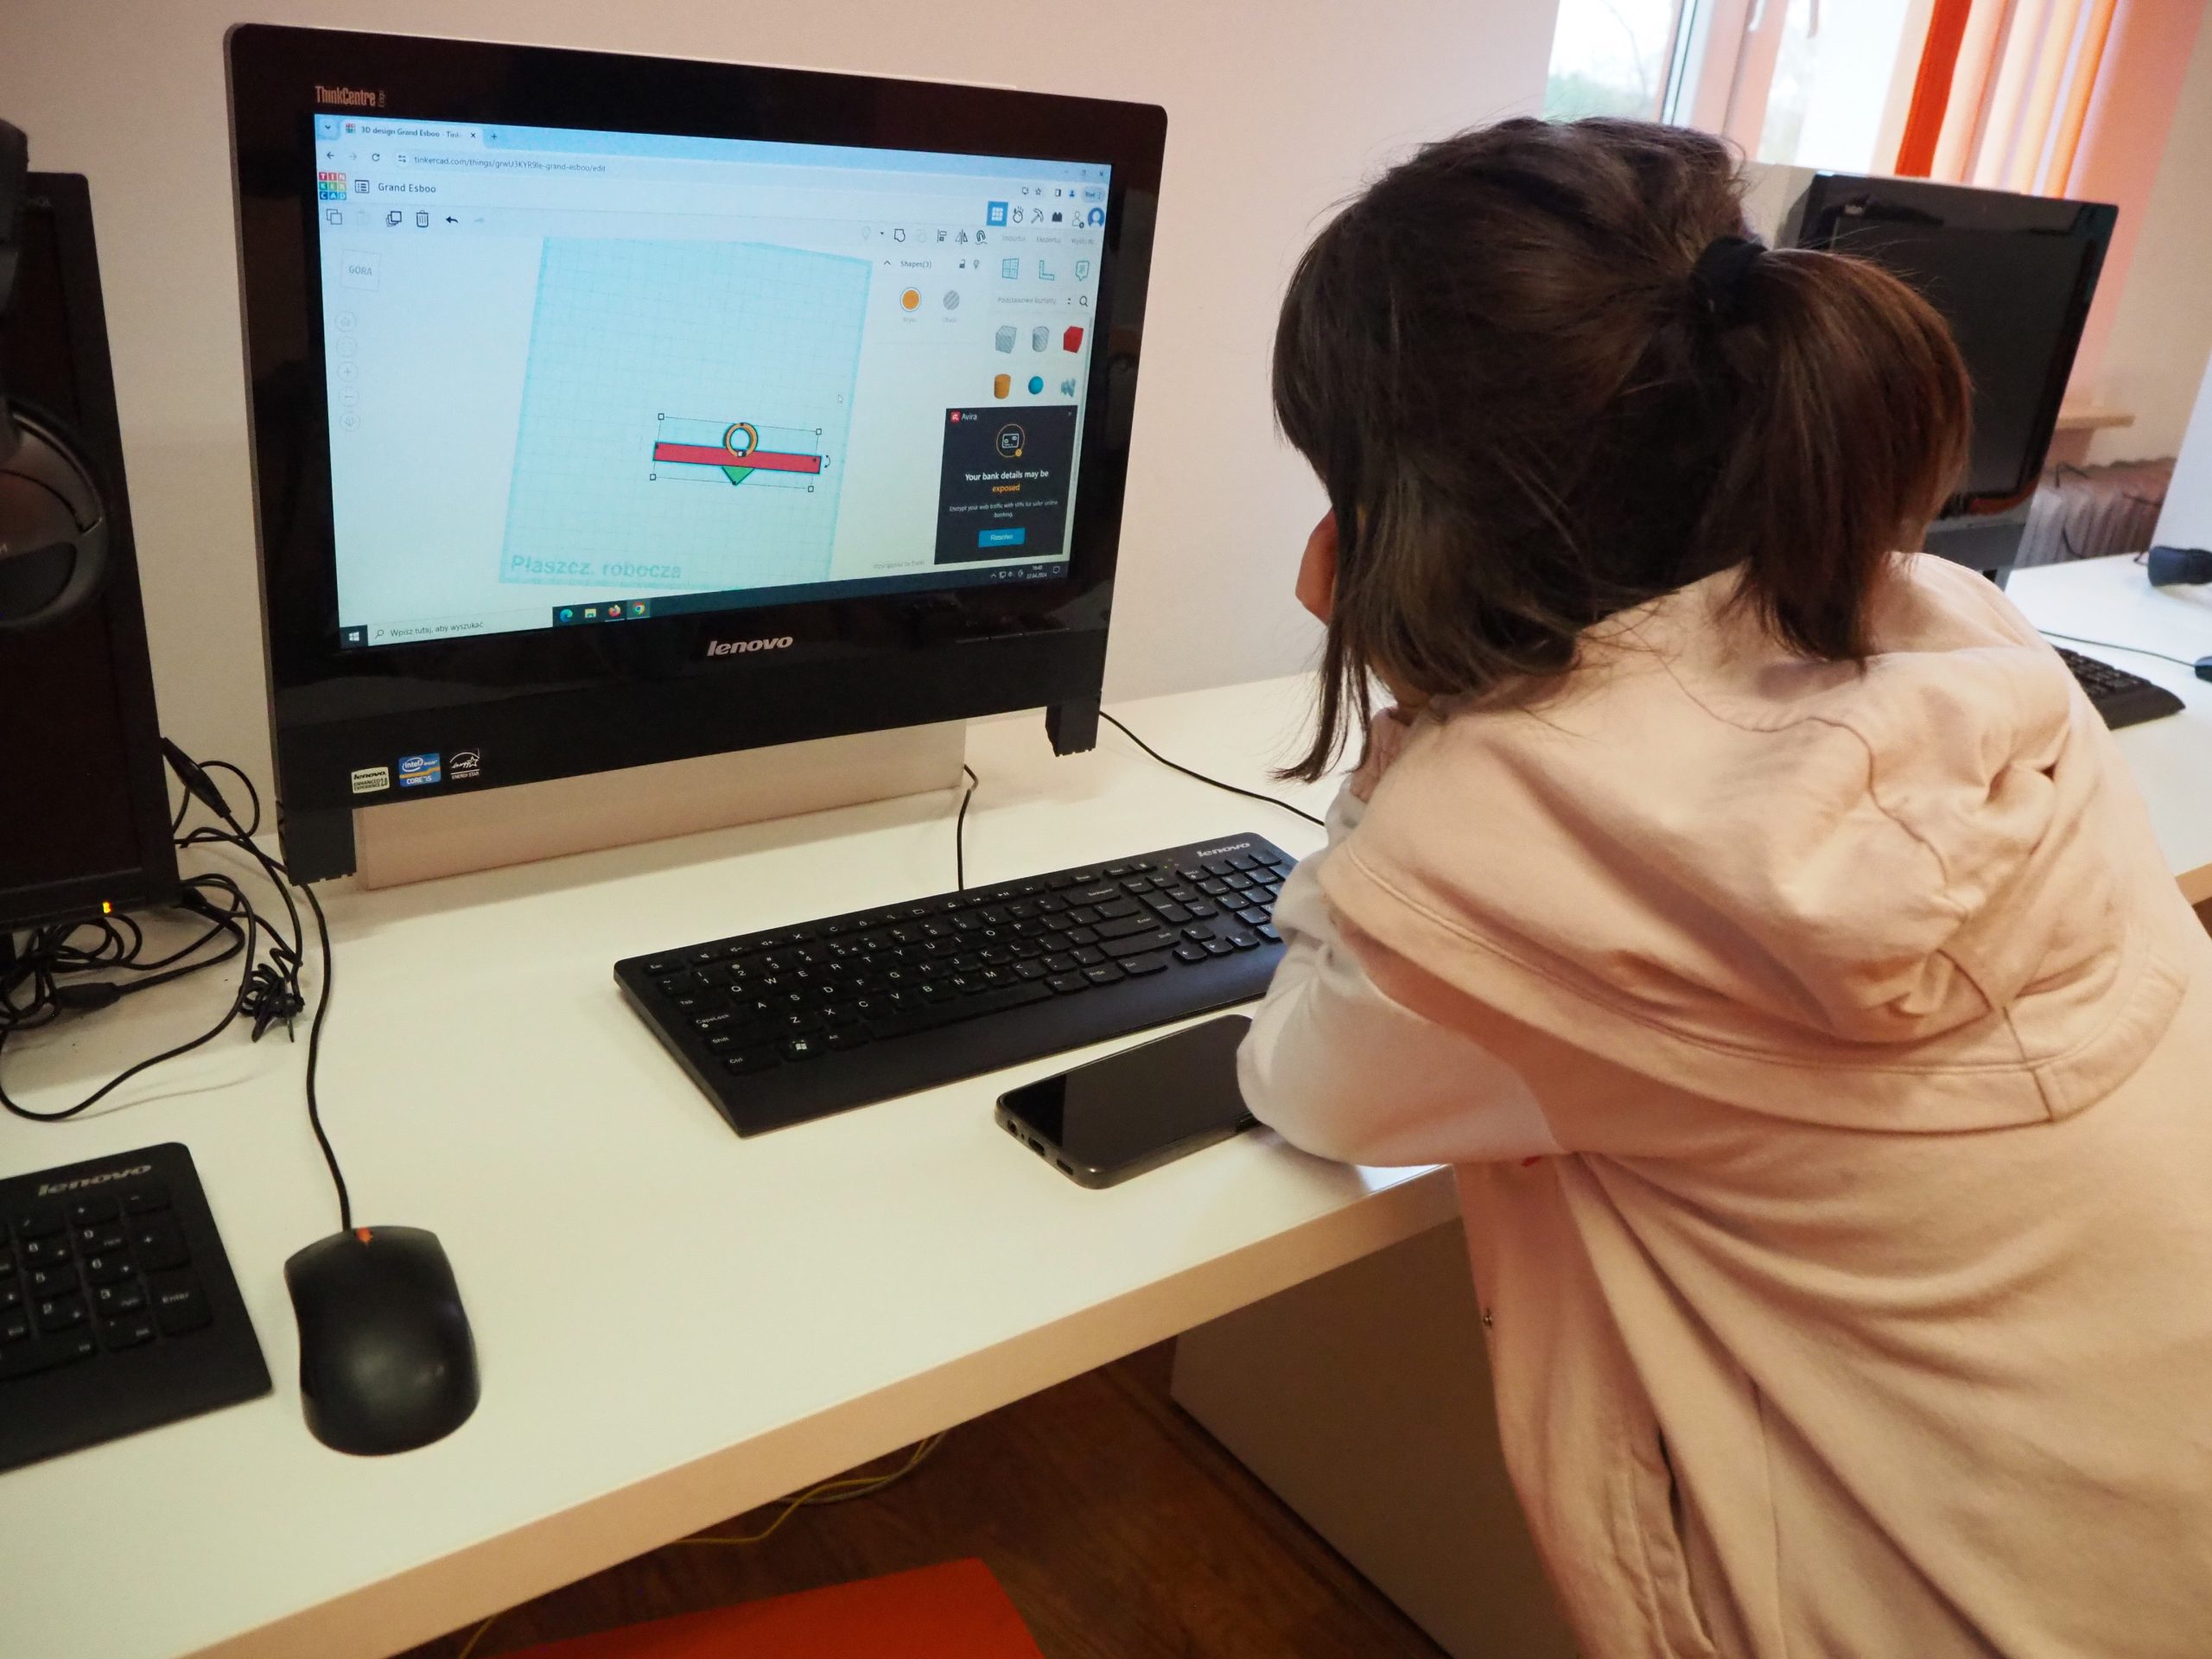 Dzieci siedzące przy komputerach.